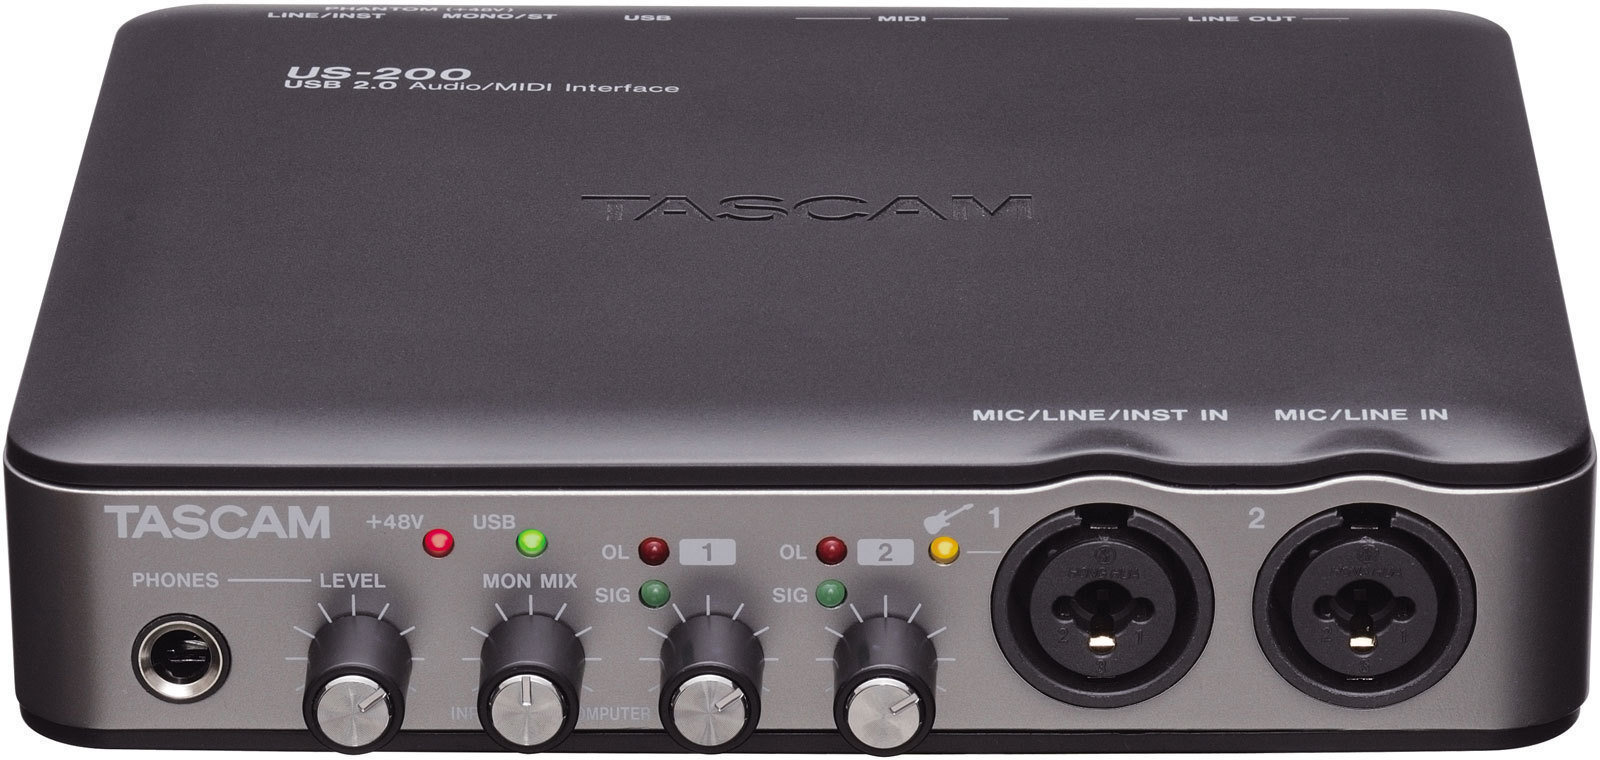 USB-ljudgränssnitt Tascam US-200